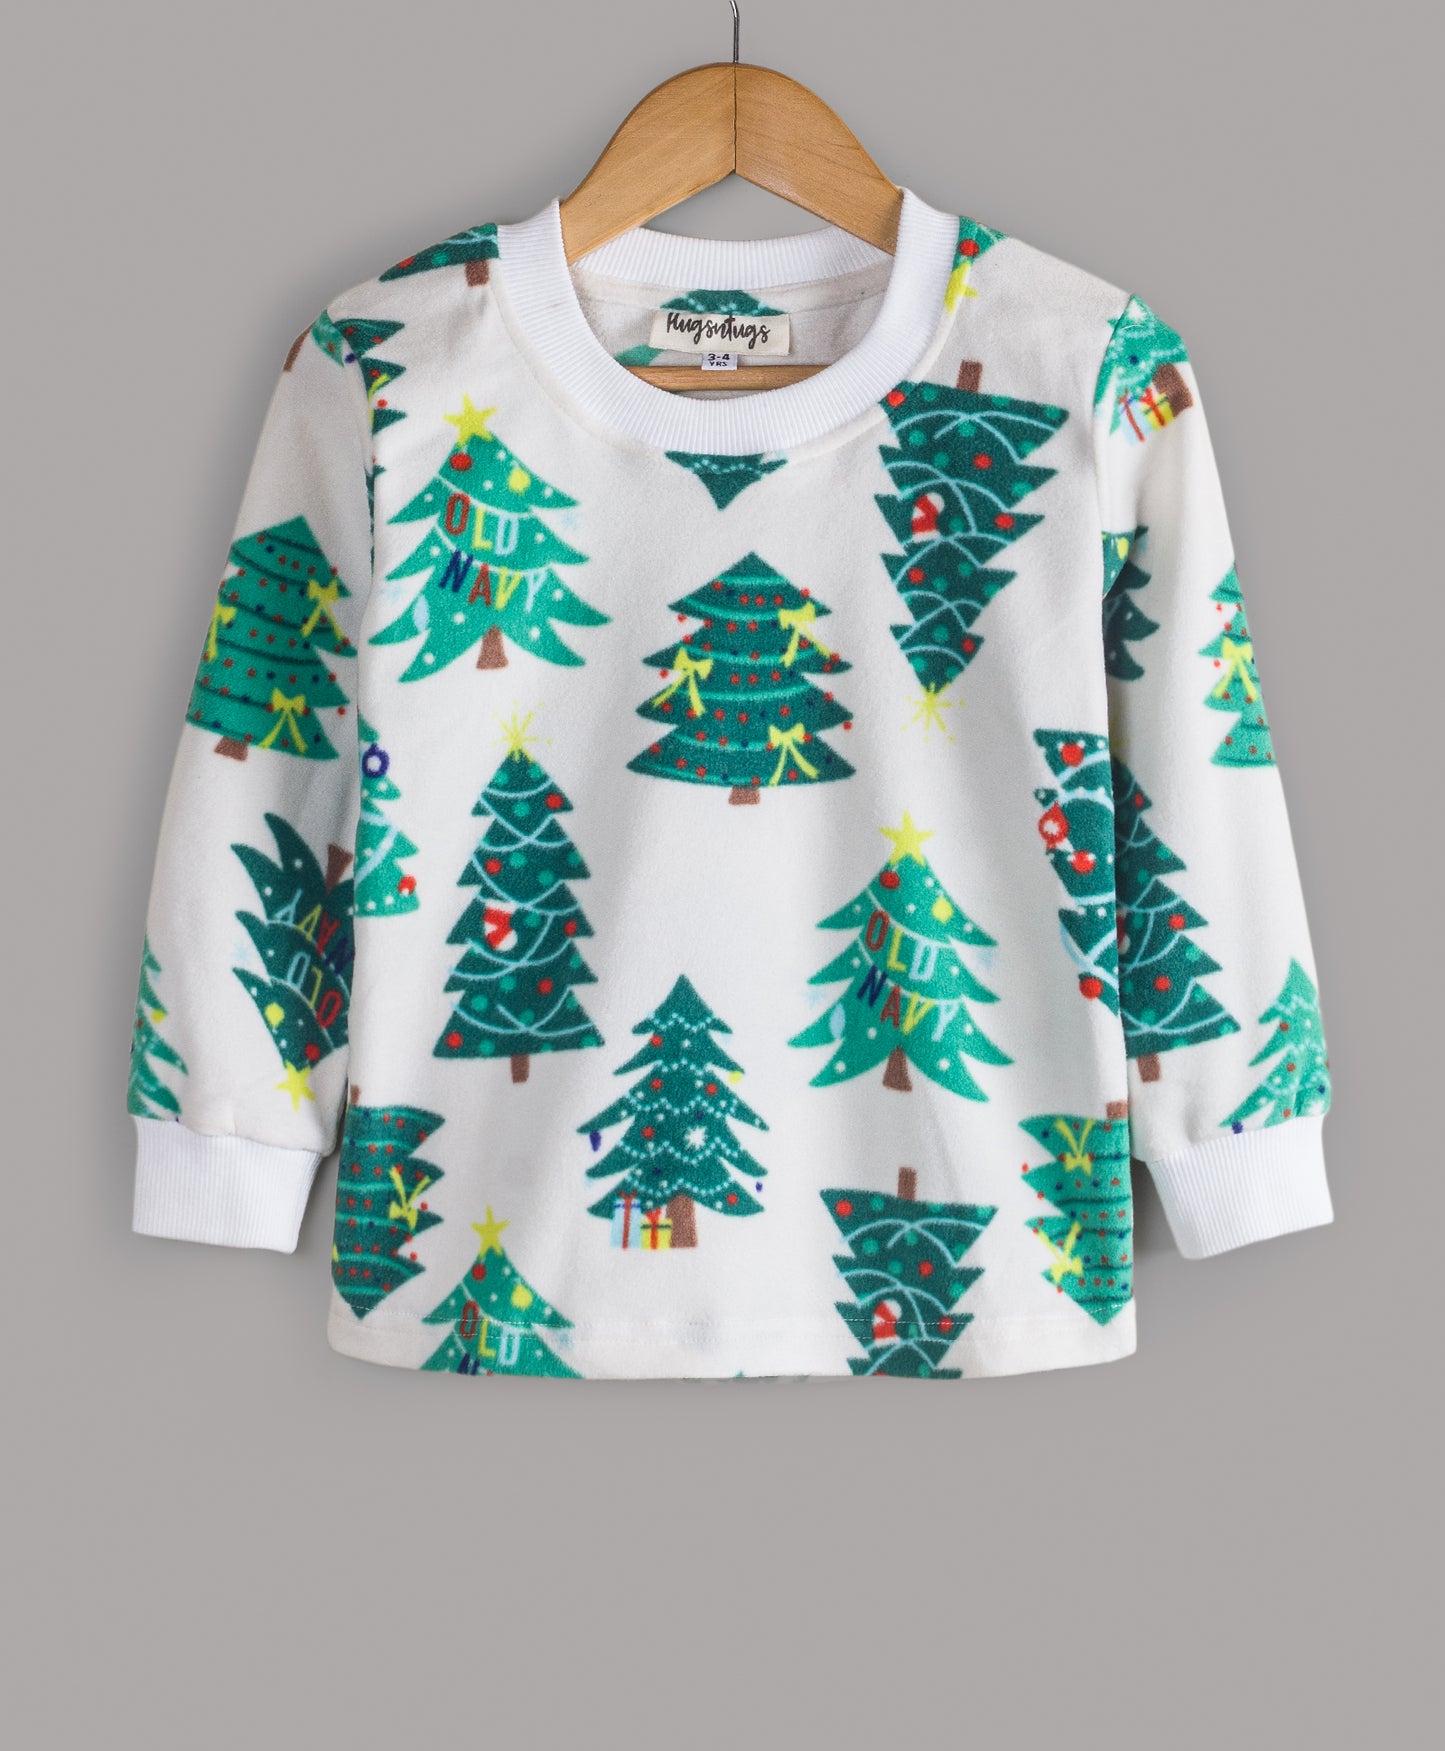 Christmas Tree print track suit. Hi